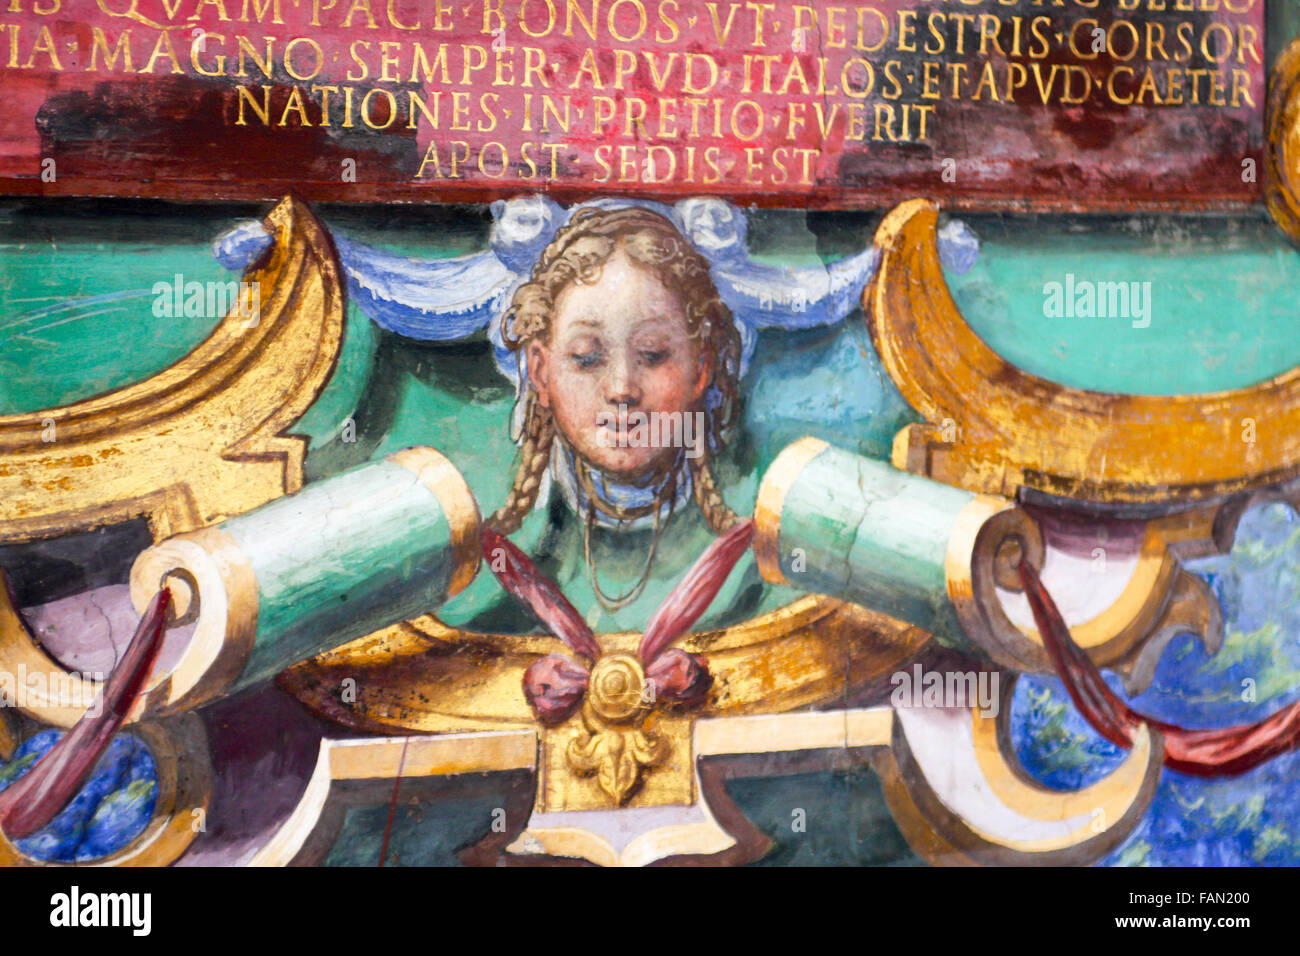 VATICAN - Le 6 juin 2012 : Plein air dans les Musées du Vatican (Musei Vaticani). Situé dans la ville du Vatican, sont parmi les plus grands muse Banque D'Images